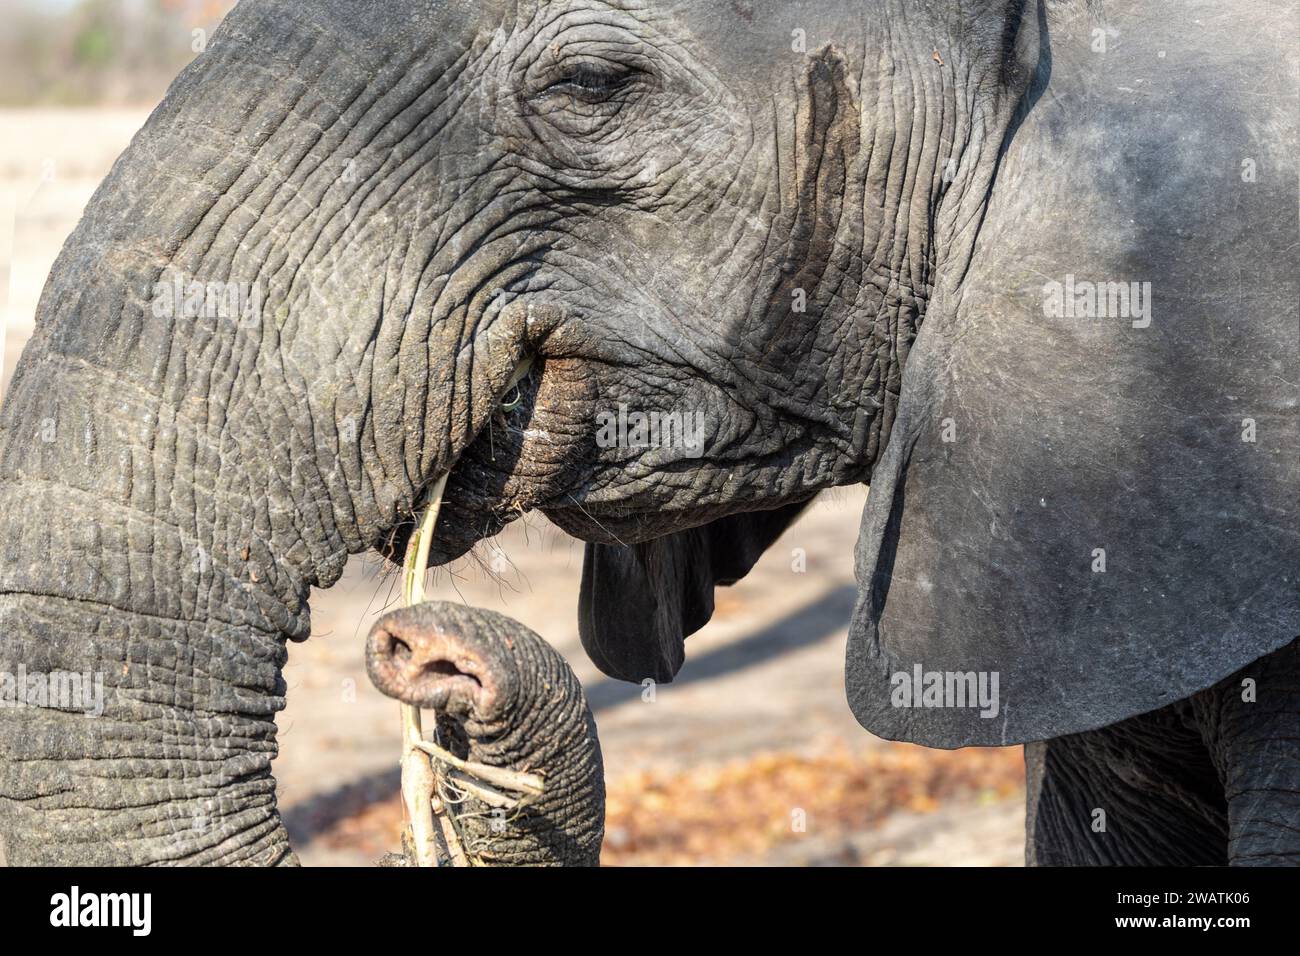 Elephant, female, eating, walking close-by, mopane woodland, Liwonde National Park, Malawi Stock Photo